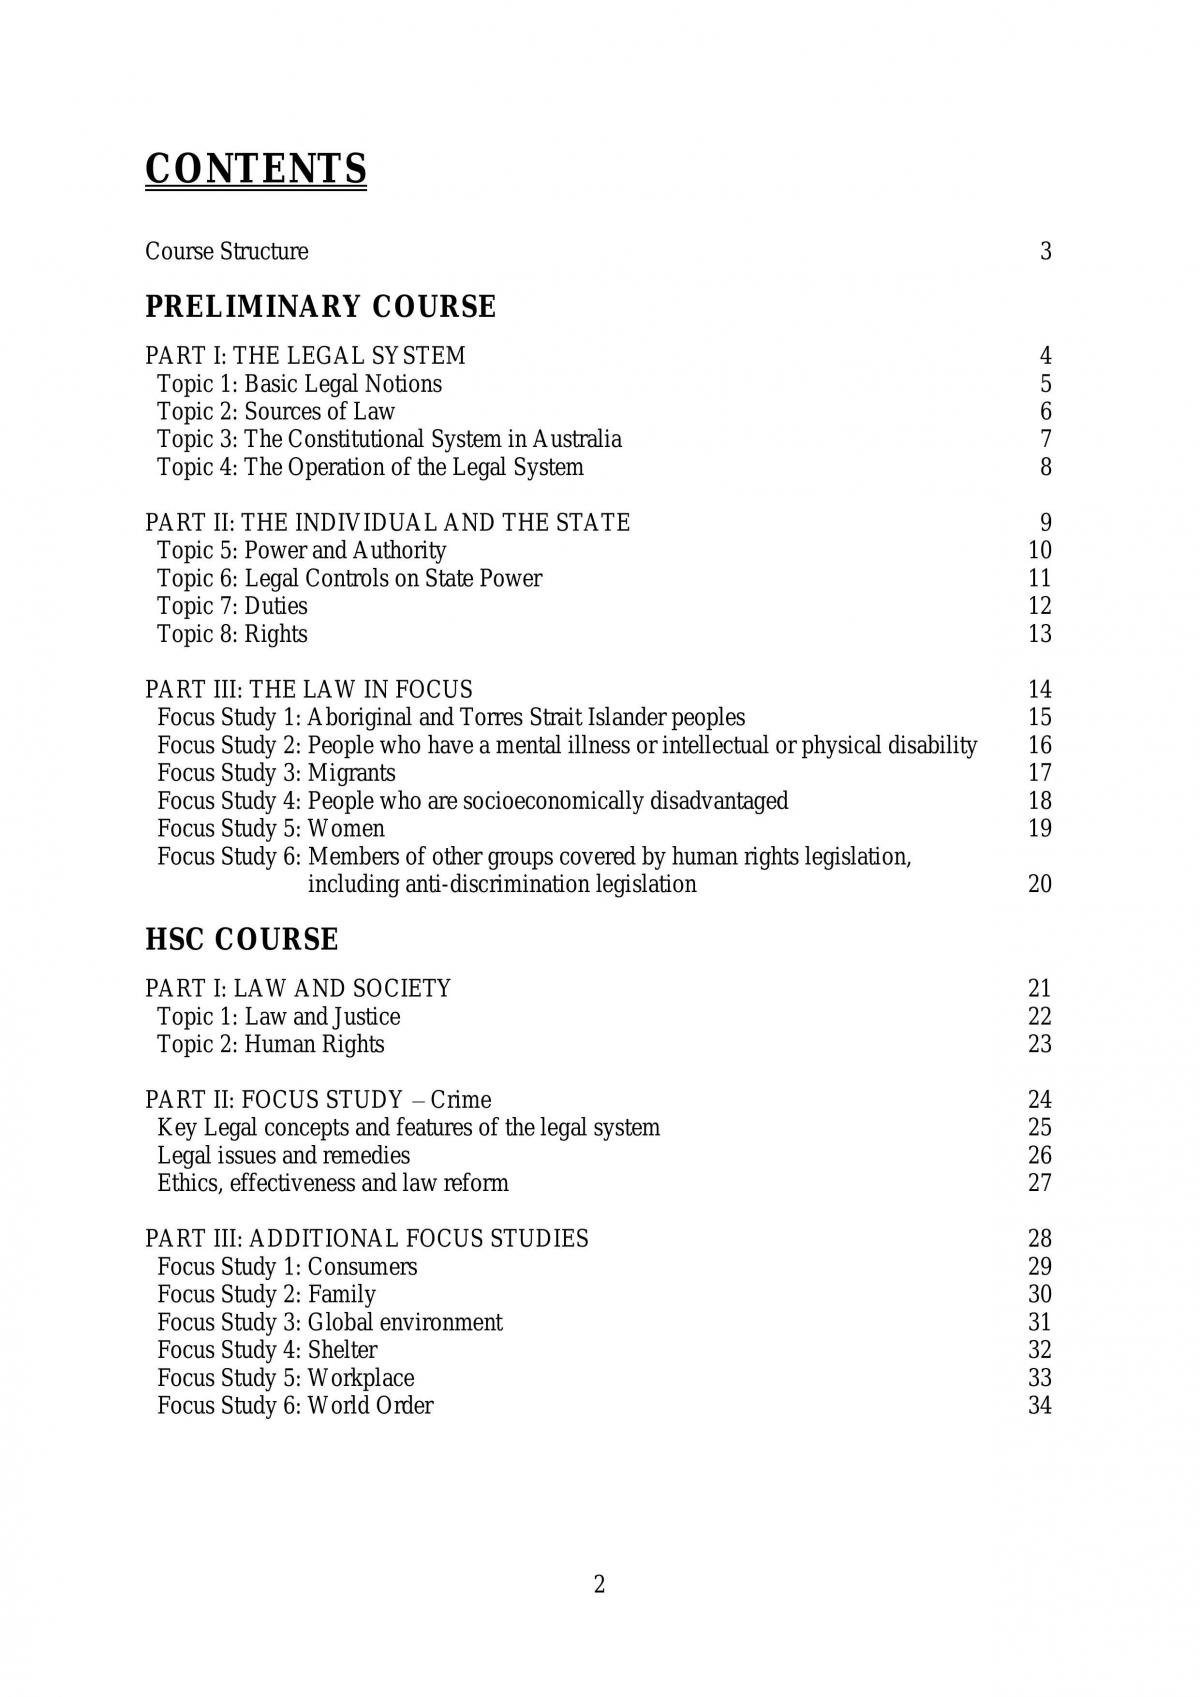 Legal Studies HSC Notes - Page 2